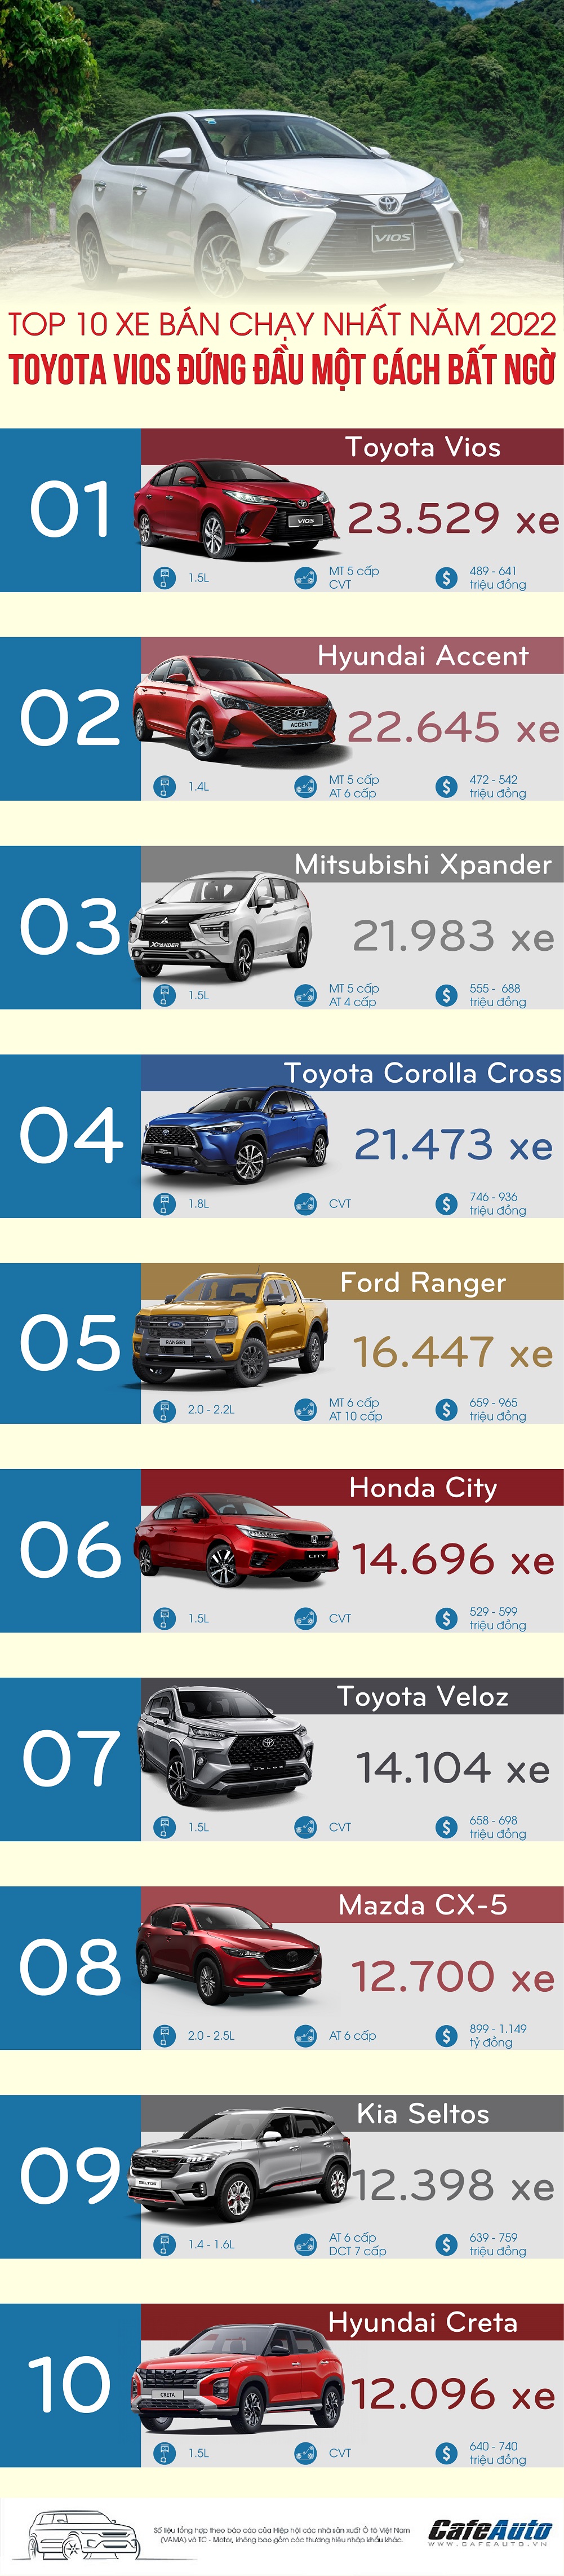 Top xe bán chạy nhất năm 2022, Toyota Vios không gây bất ngờ khi lại đứng đầu